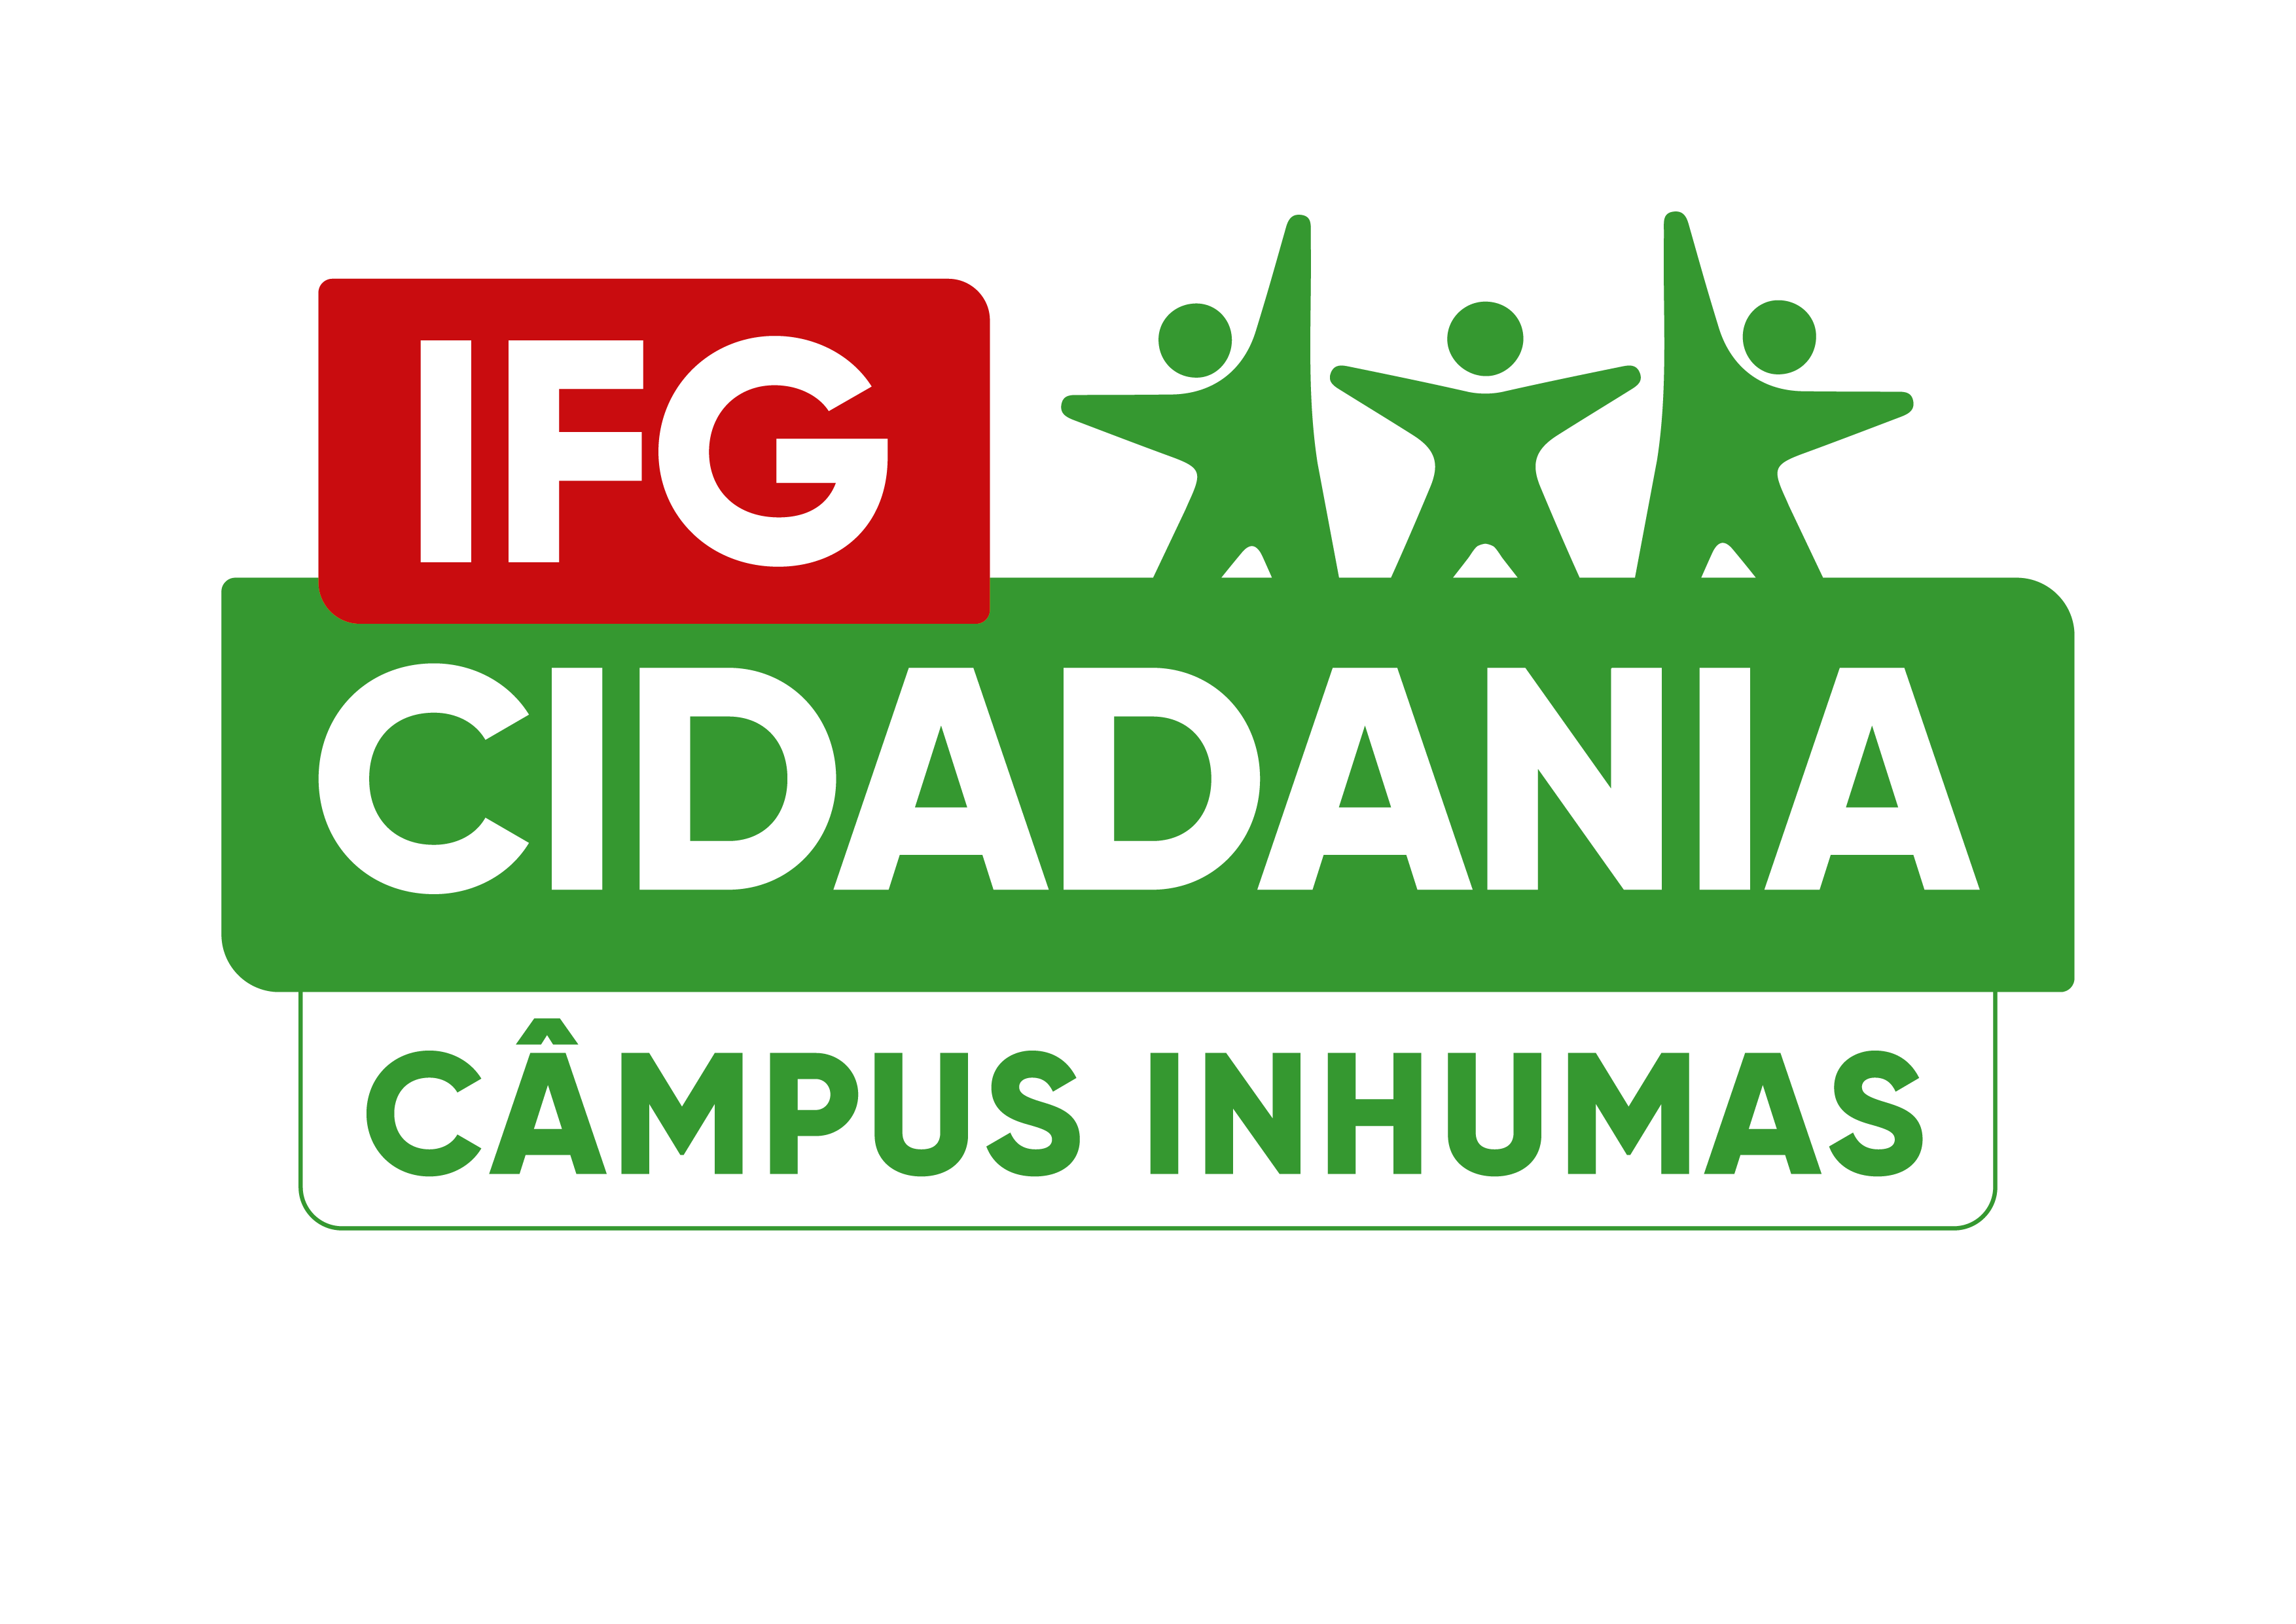 IFG Cidadania 2019